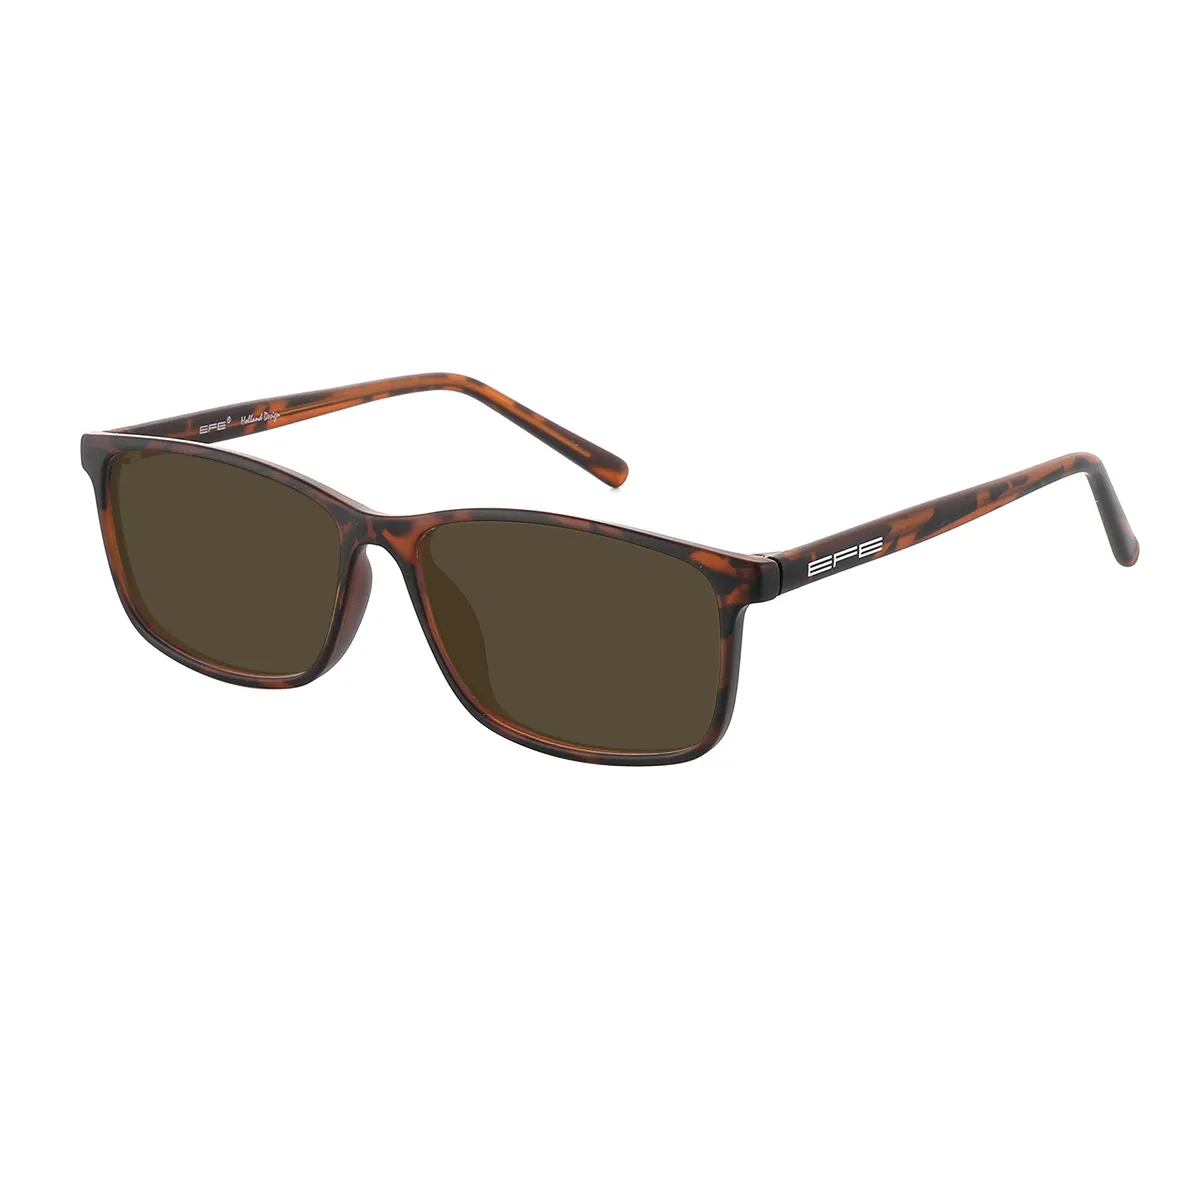 Garland - Rectangle Tortoiseshell Sunglasses for Men & Women